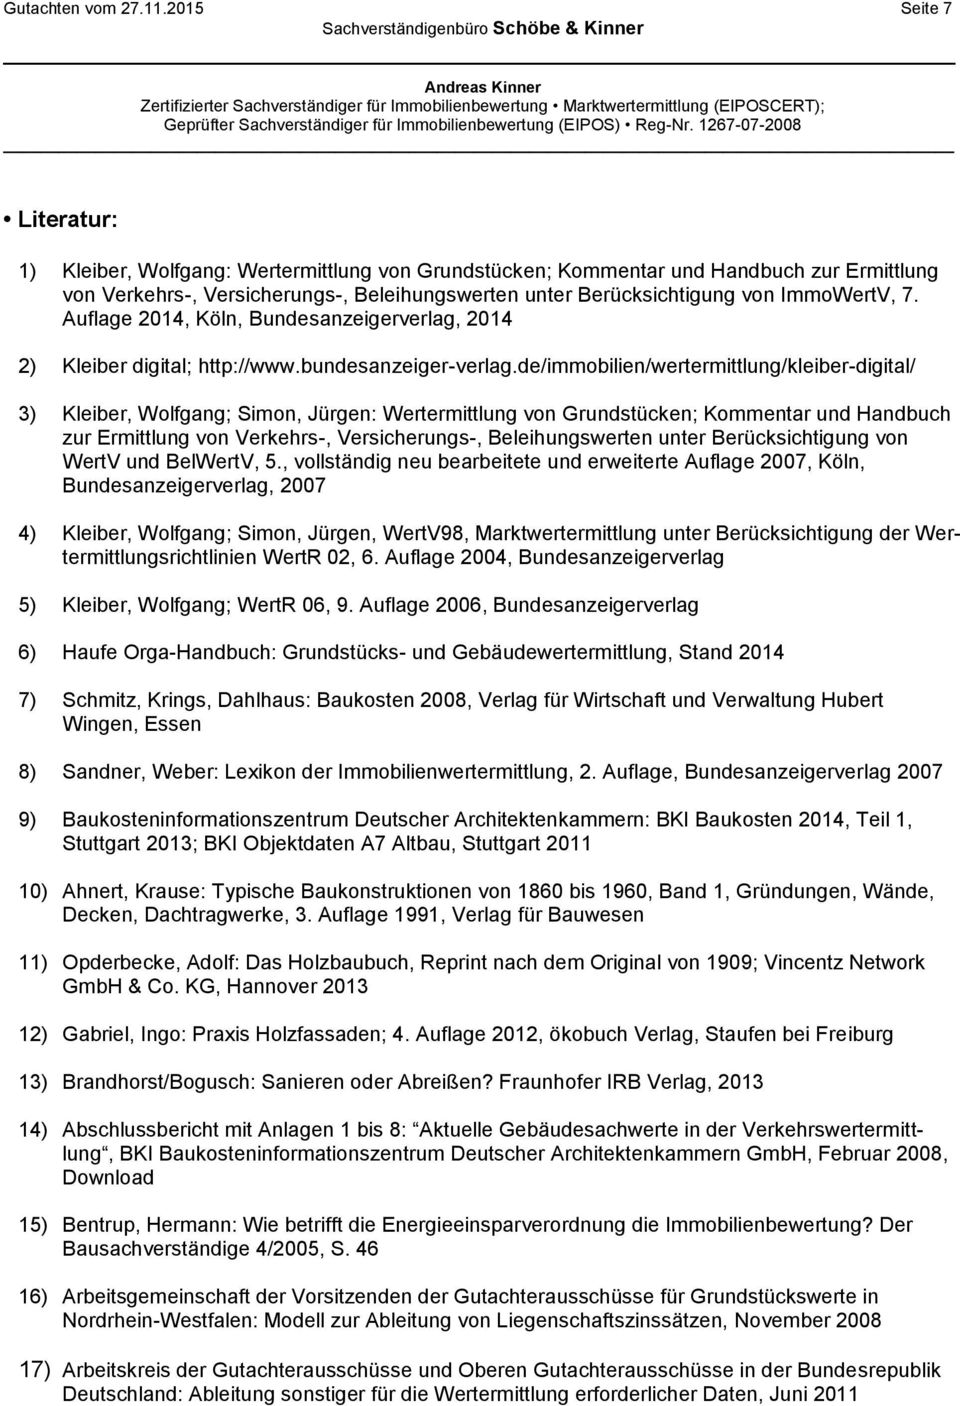 ImmoWertV, 7. Auflage 2014, Köln, Bundesanzeigerverlag, 2014 2) Kleiber digital; http://www.bundesanzeiger-verlag.